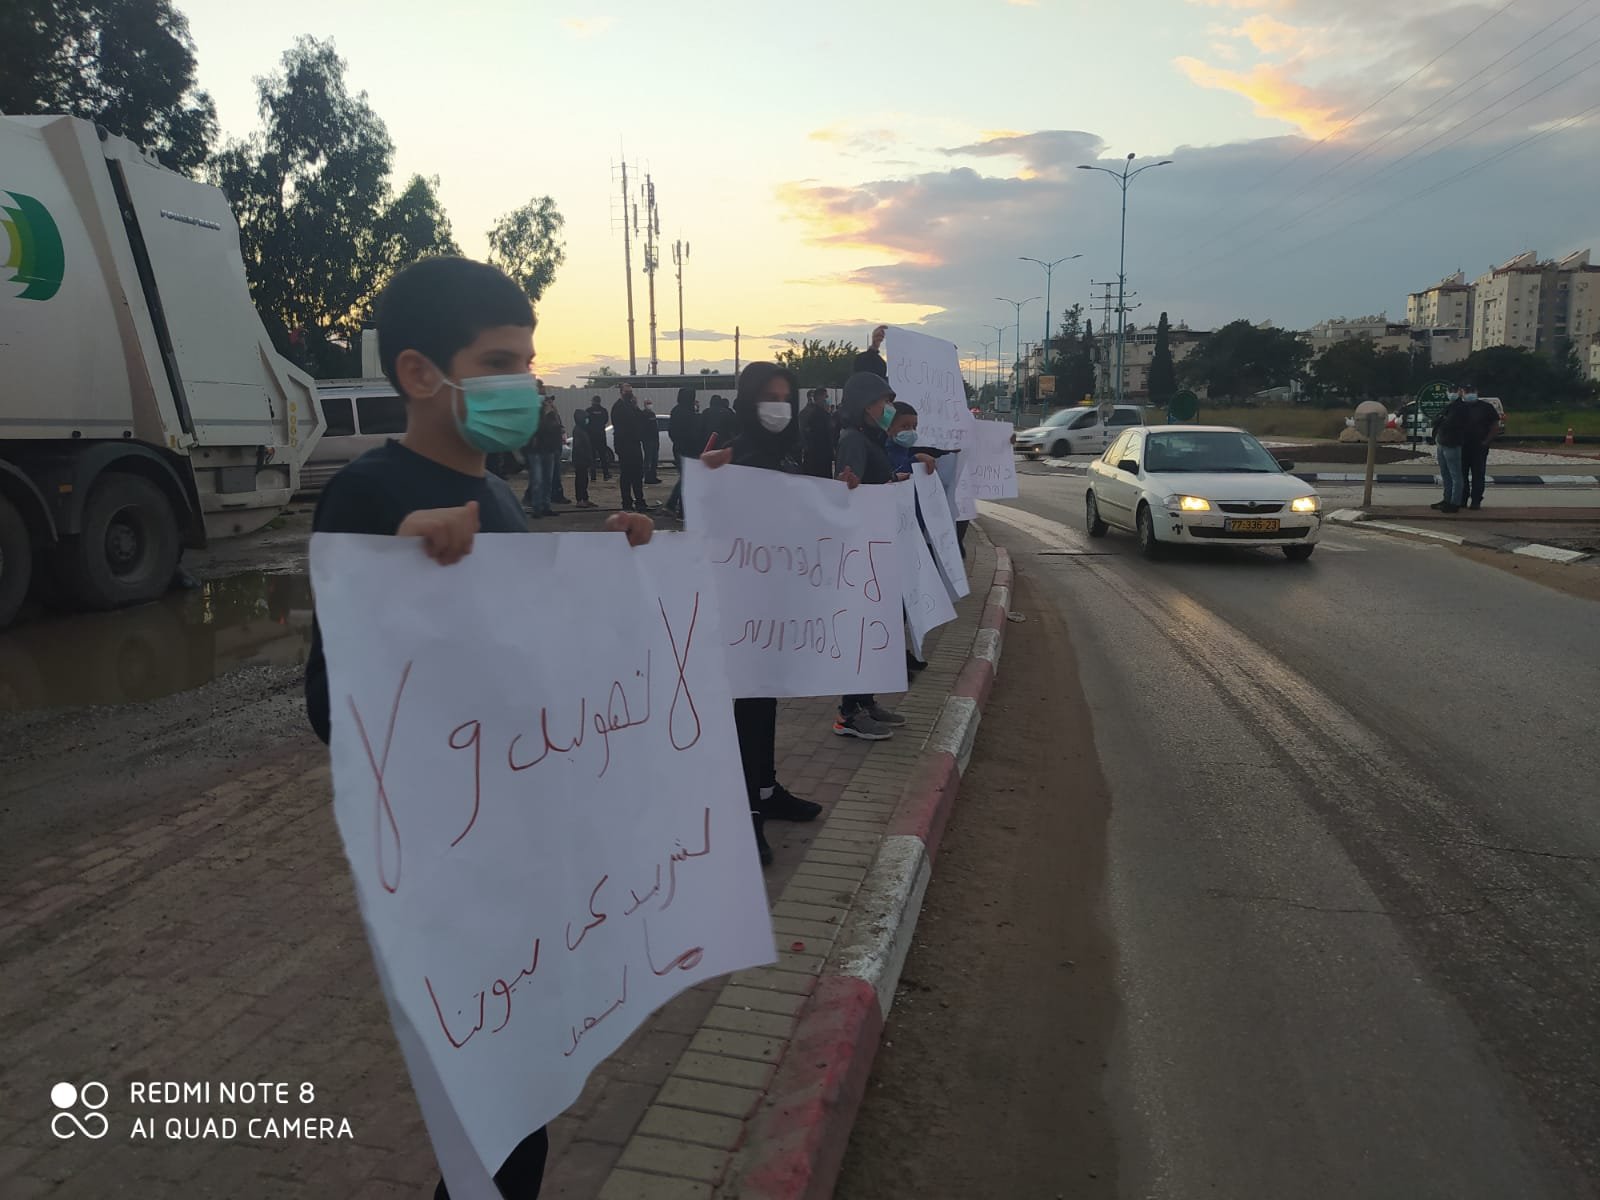 اللد: وقفة احتجاجية على مفرق جاني افيف ضد سياسة هدم البيوت العربية-0